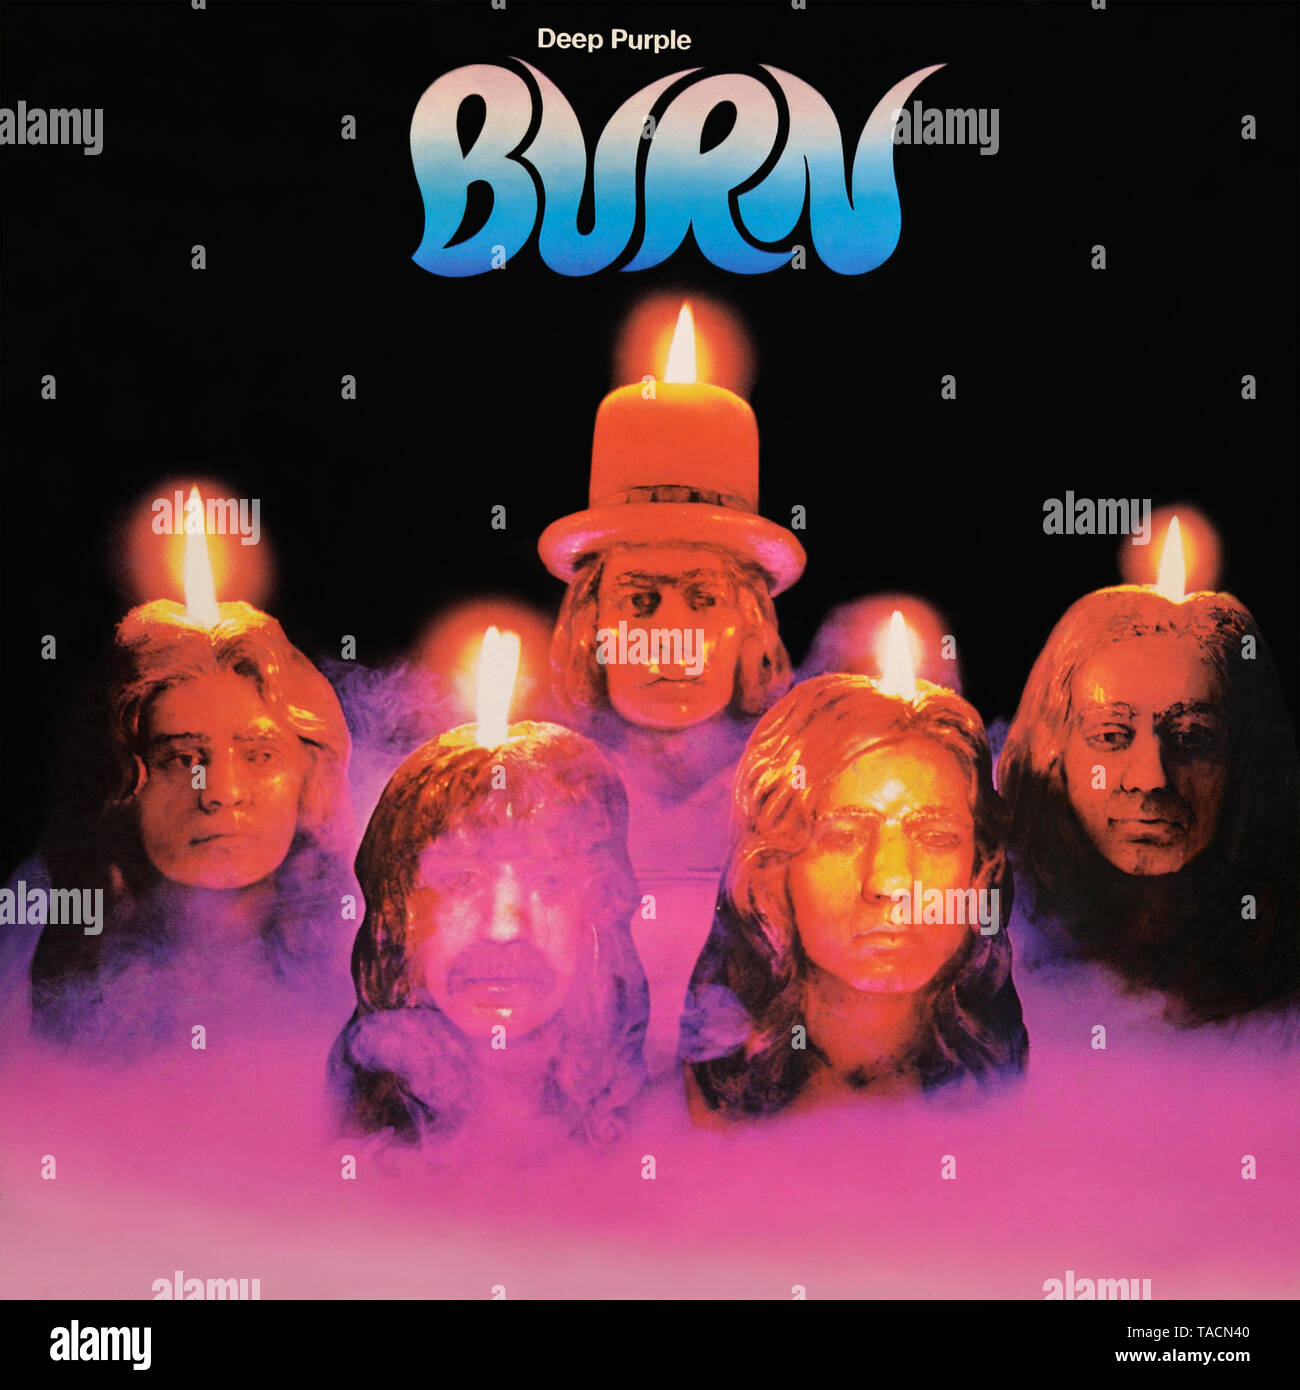 Deep Purple - original vinyl album cover - Burn - 1974 Stock Photo